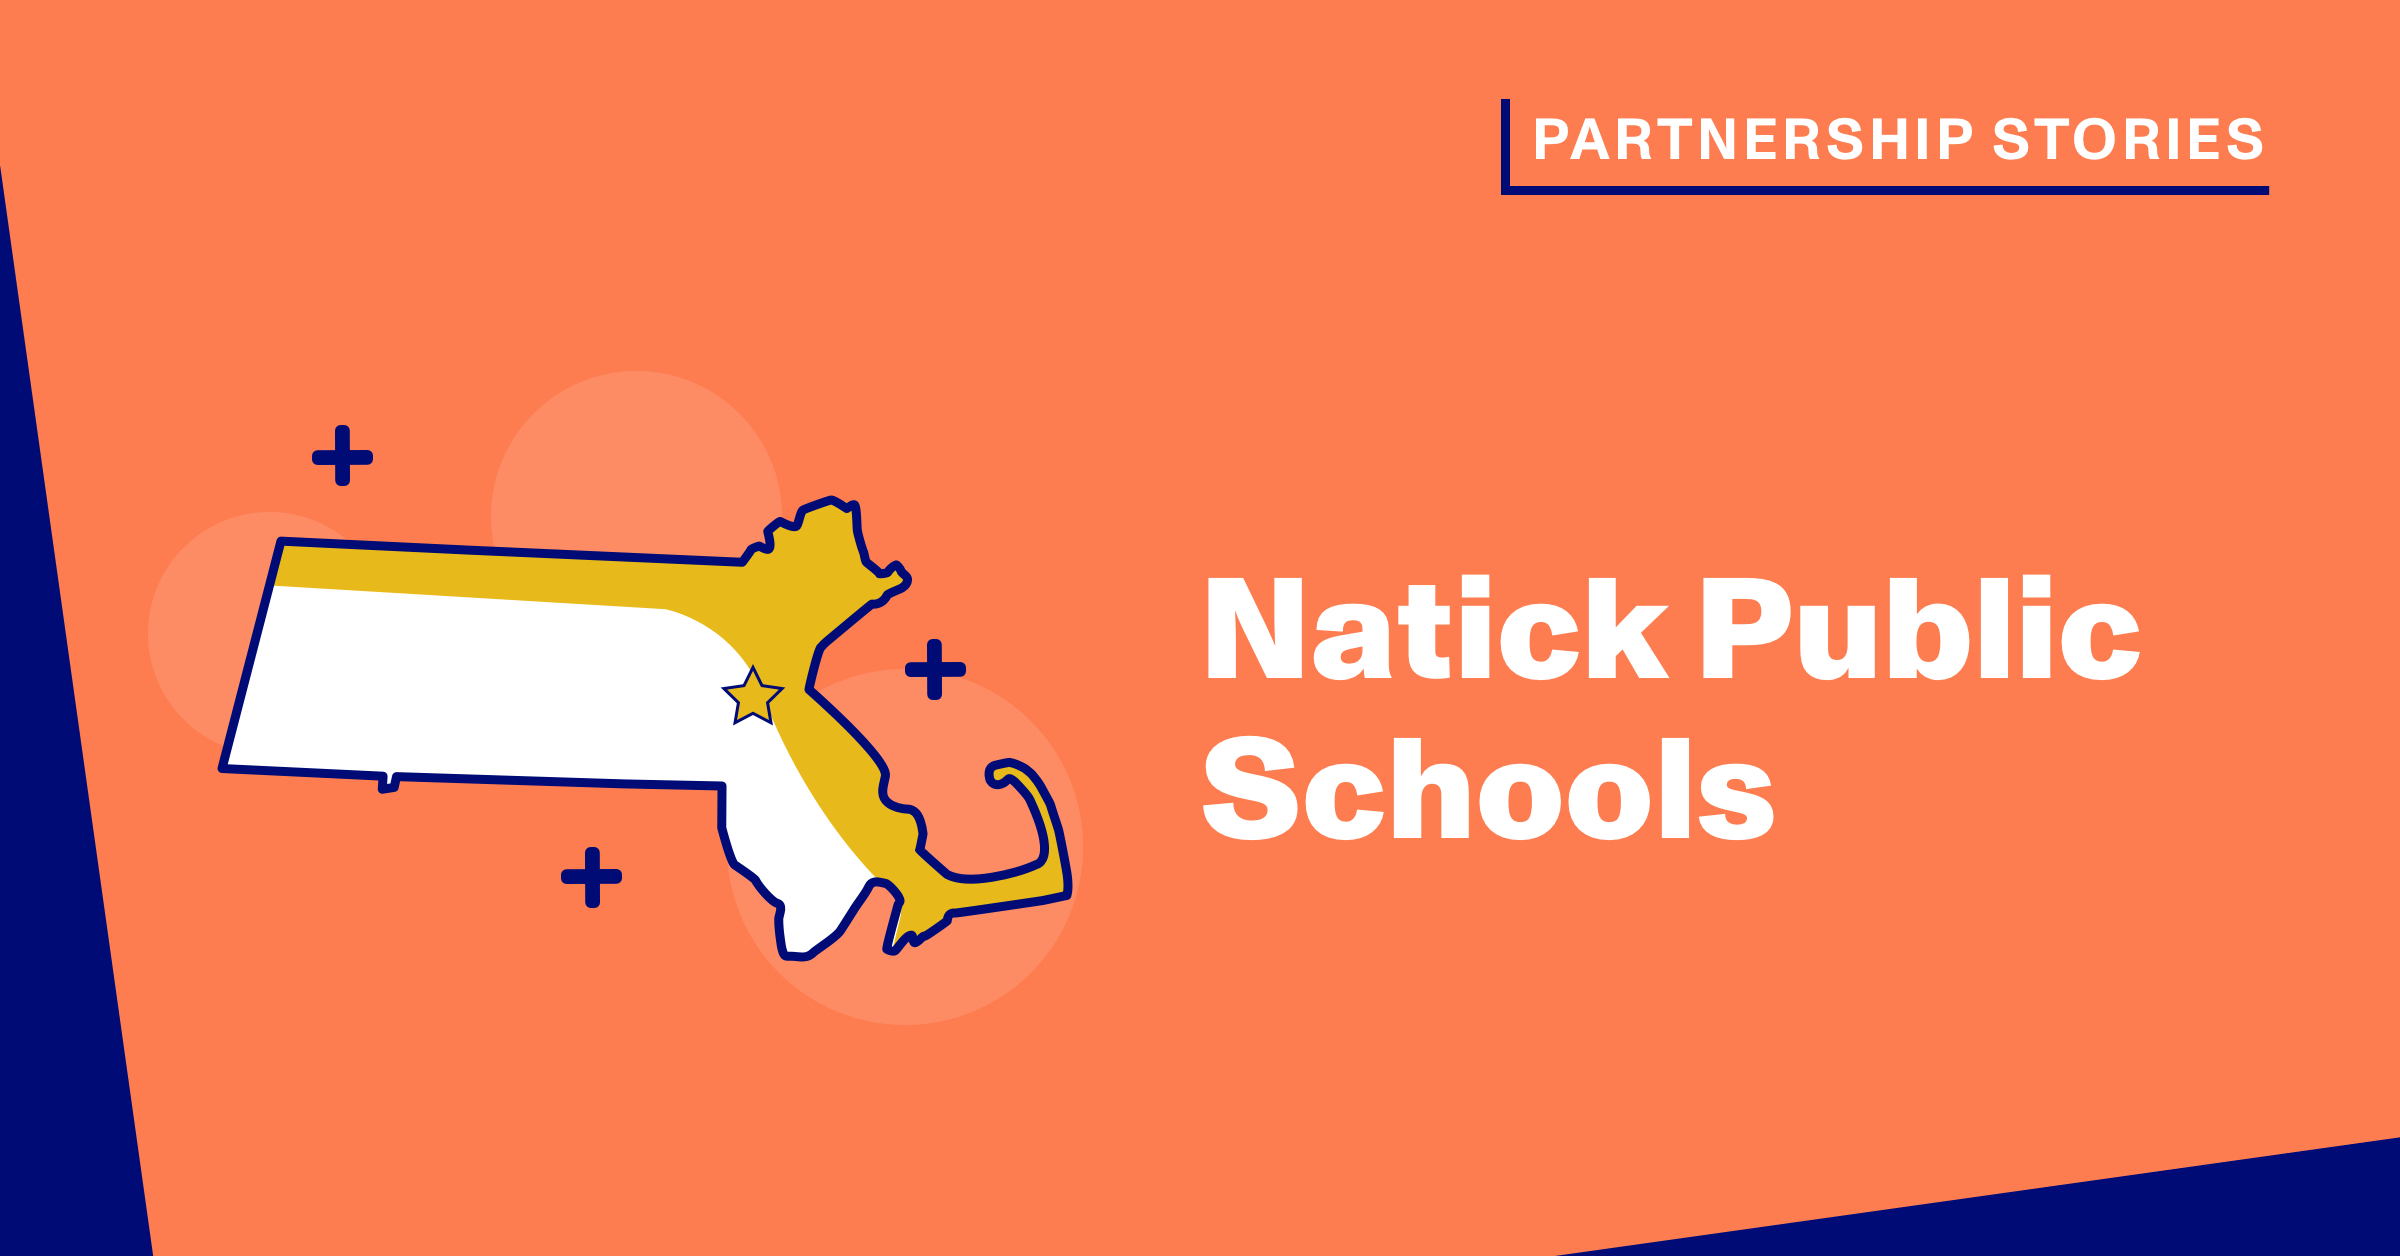 Natick Public Schools